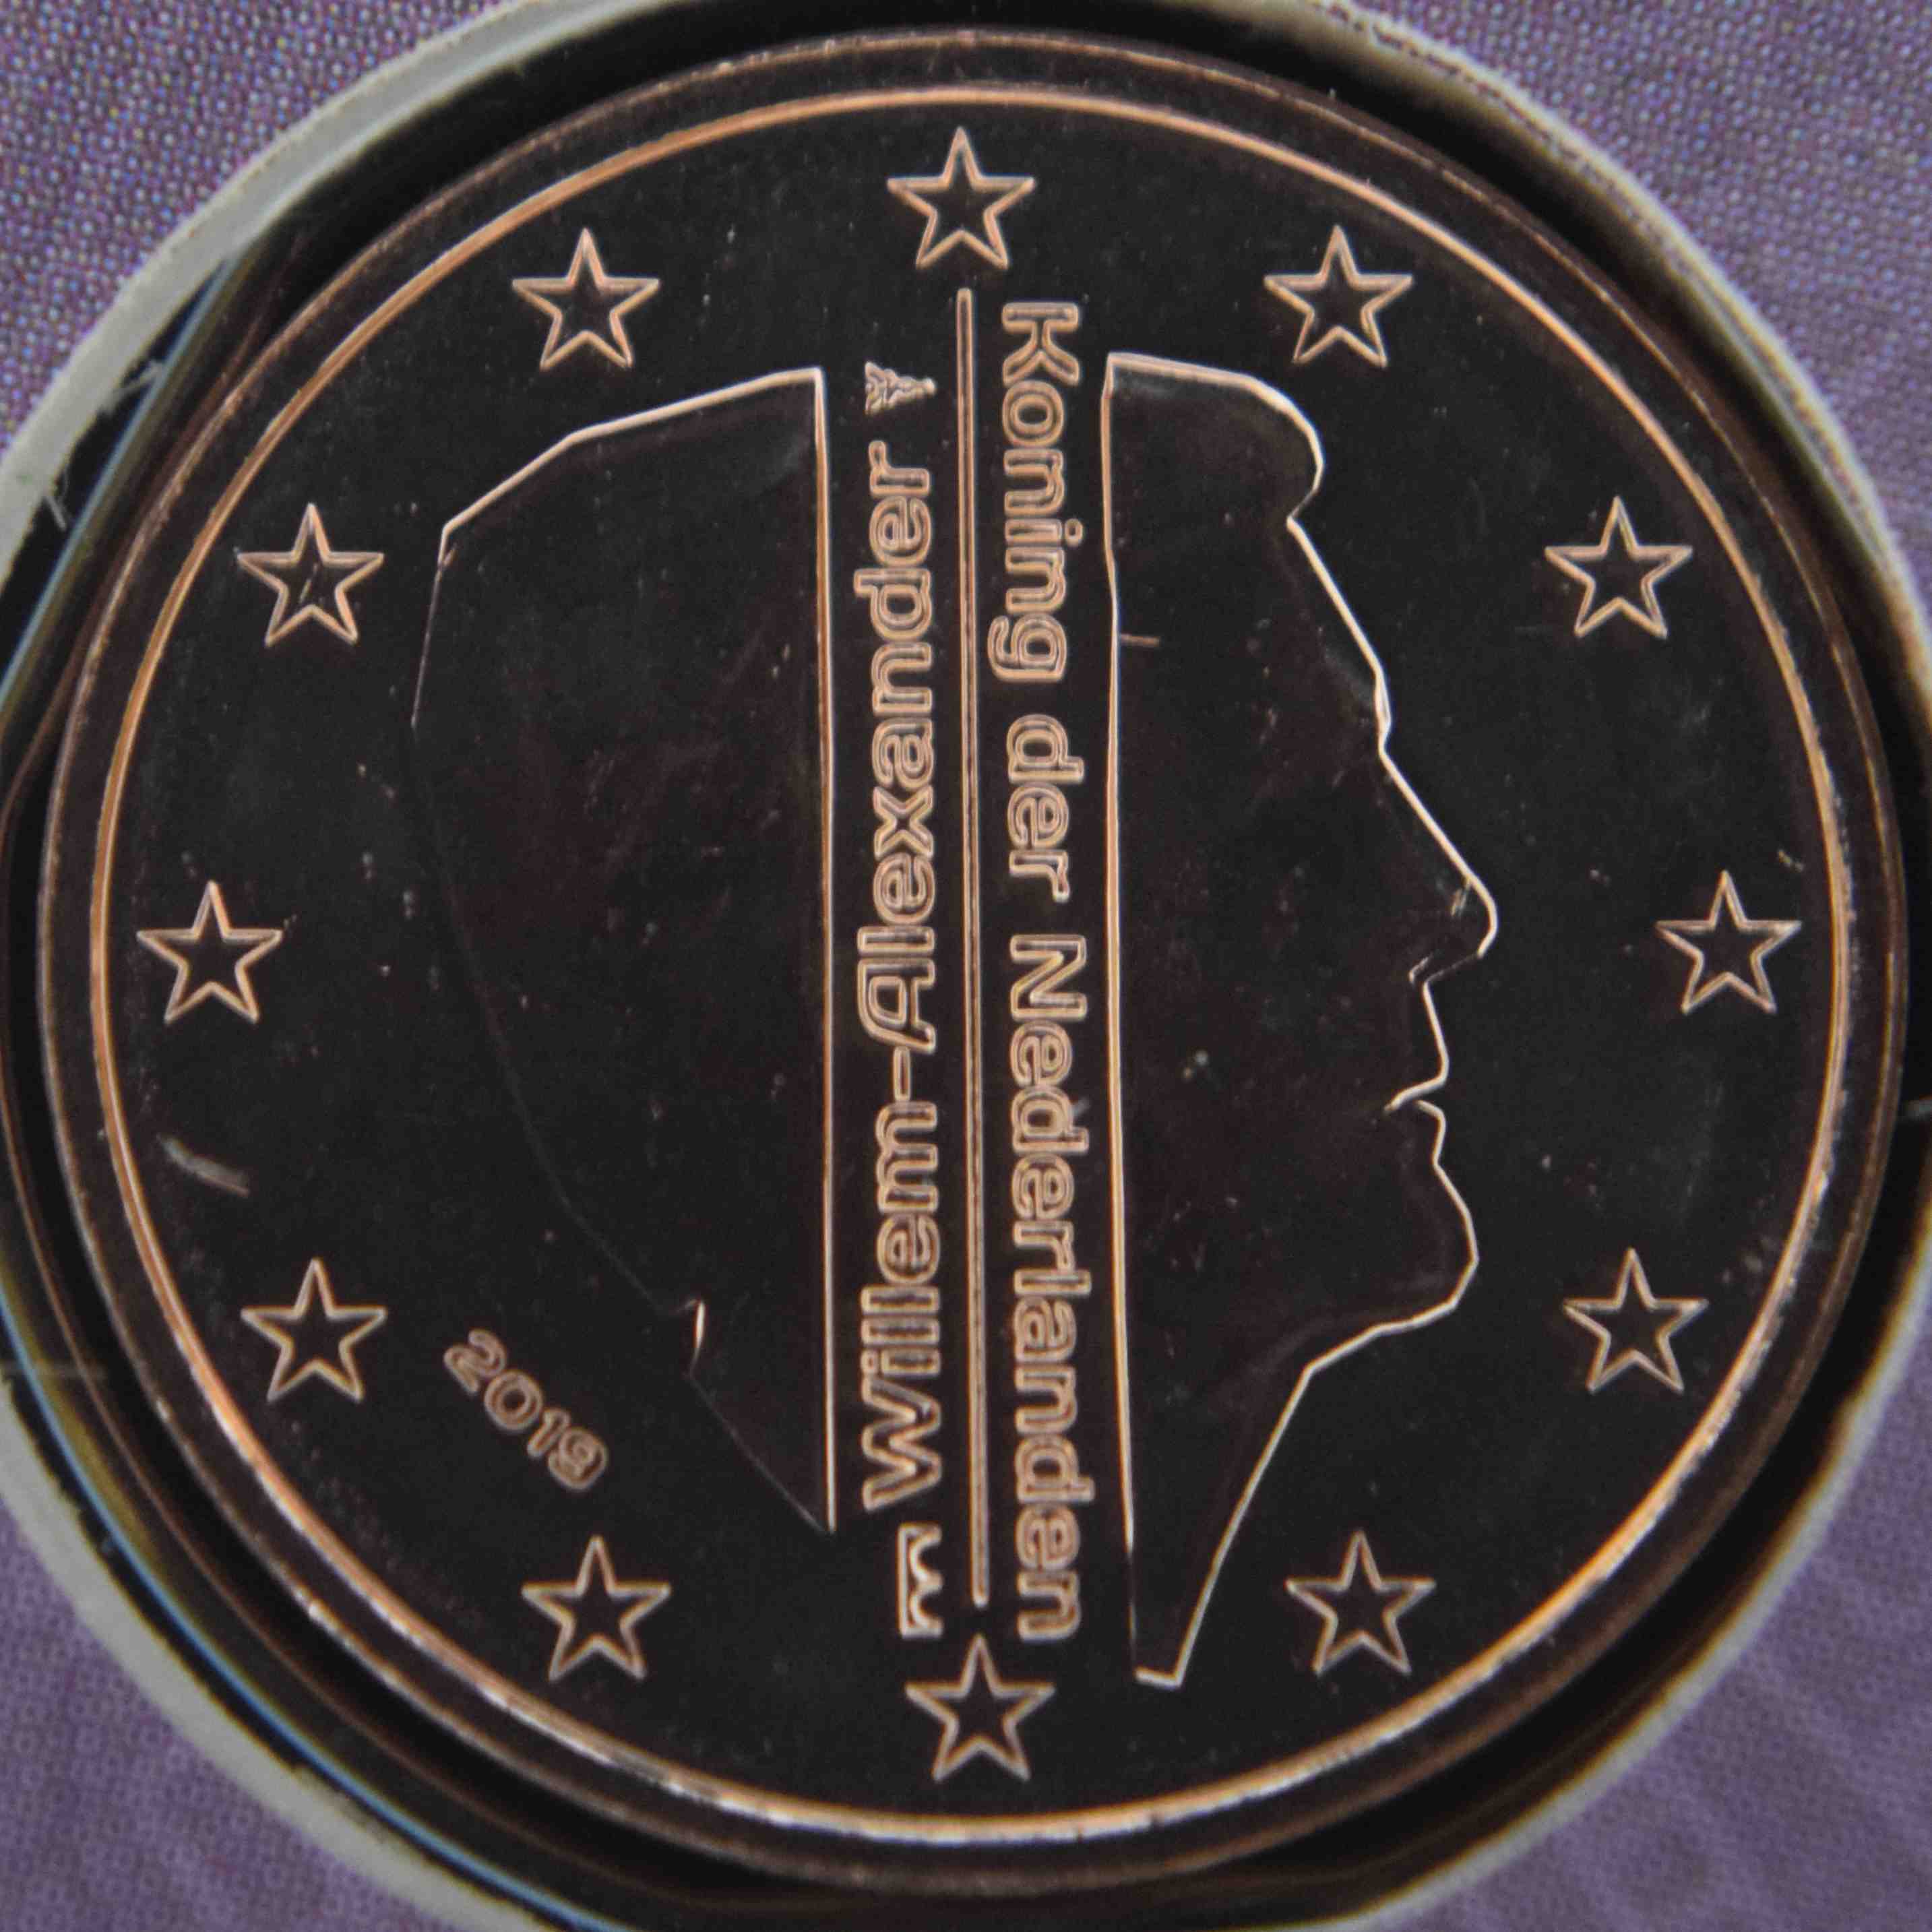 Niederlande Euro Kursmünzen 2019 Wert Infos Und Bilder Bei Euro